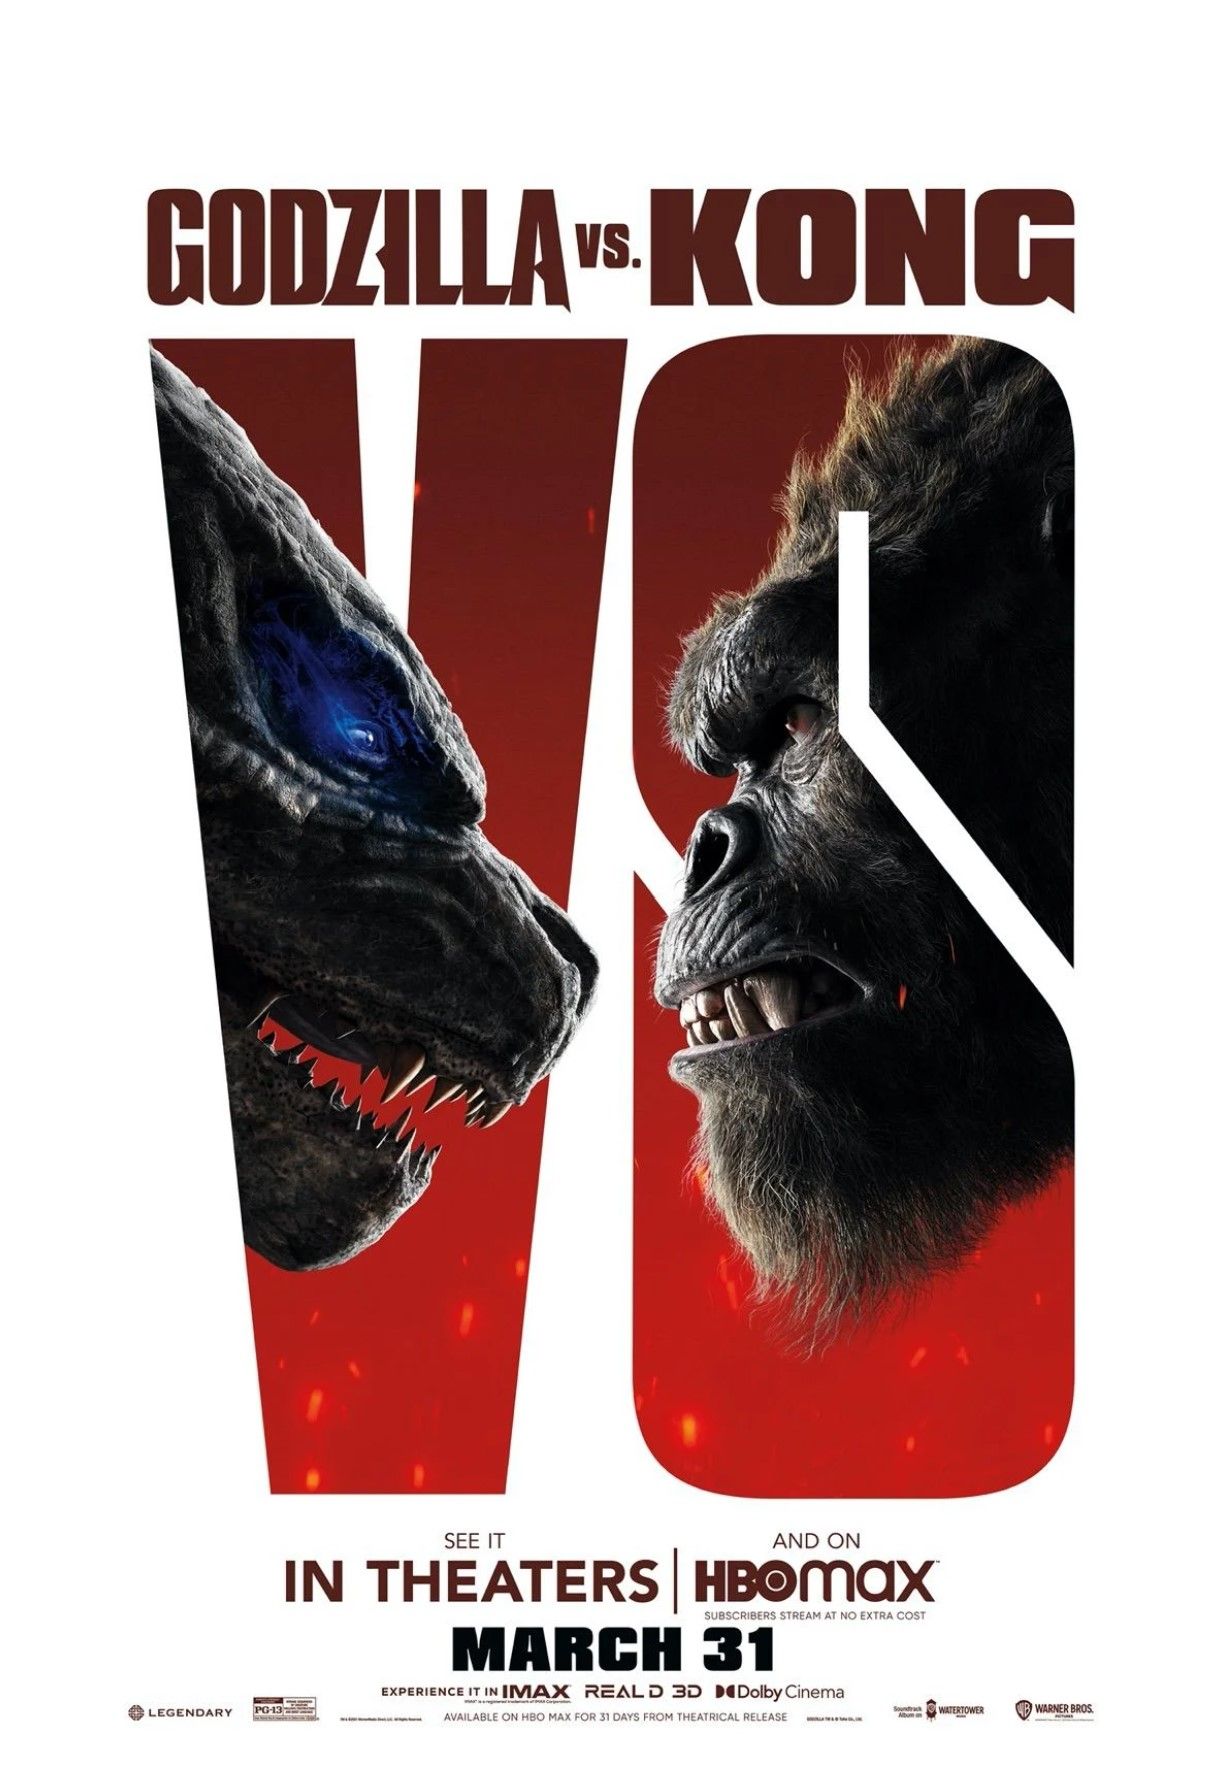 Godzilla vs Kong poster full size